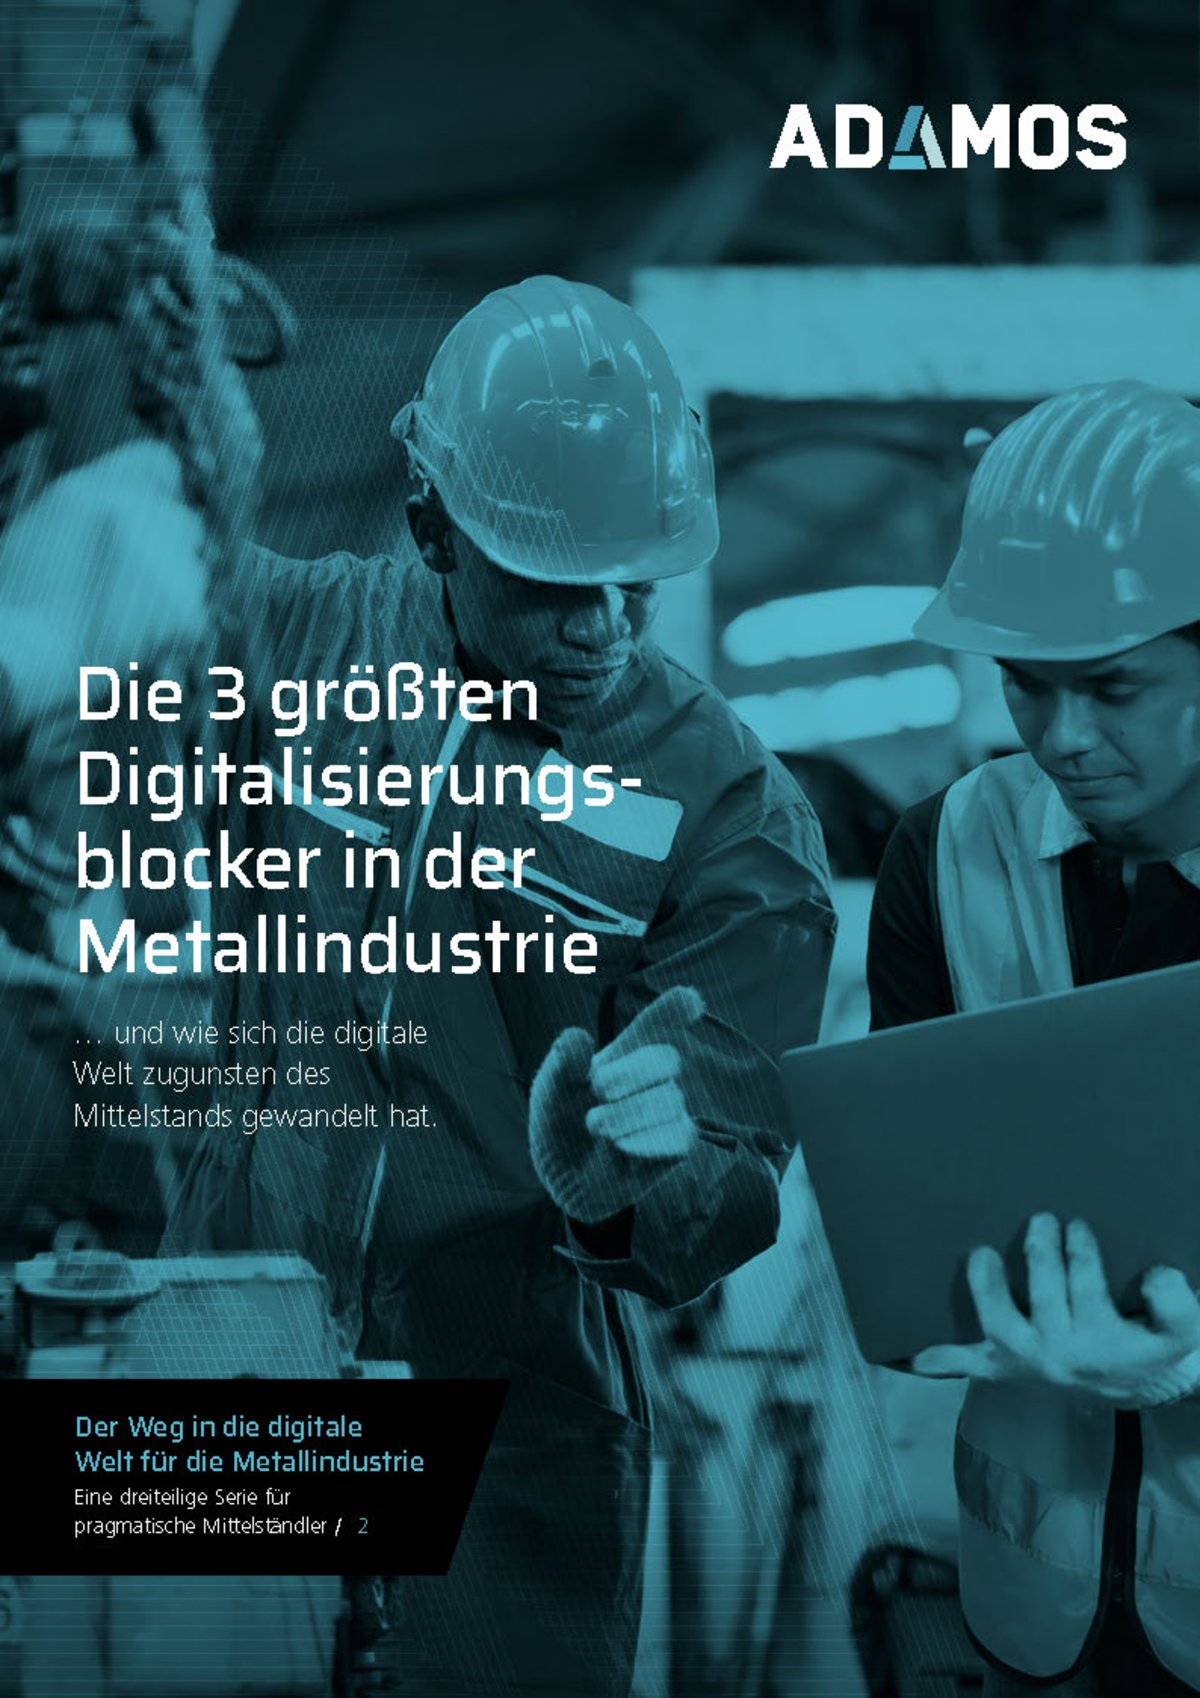 Die 3 größten Digitalisierungsblocker in der Metallindustrie